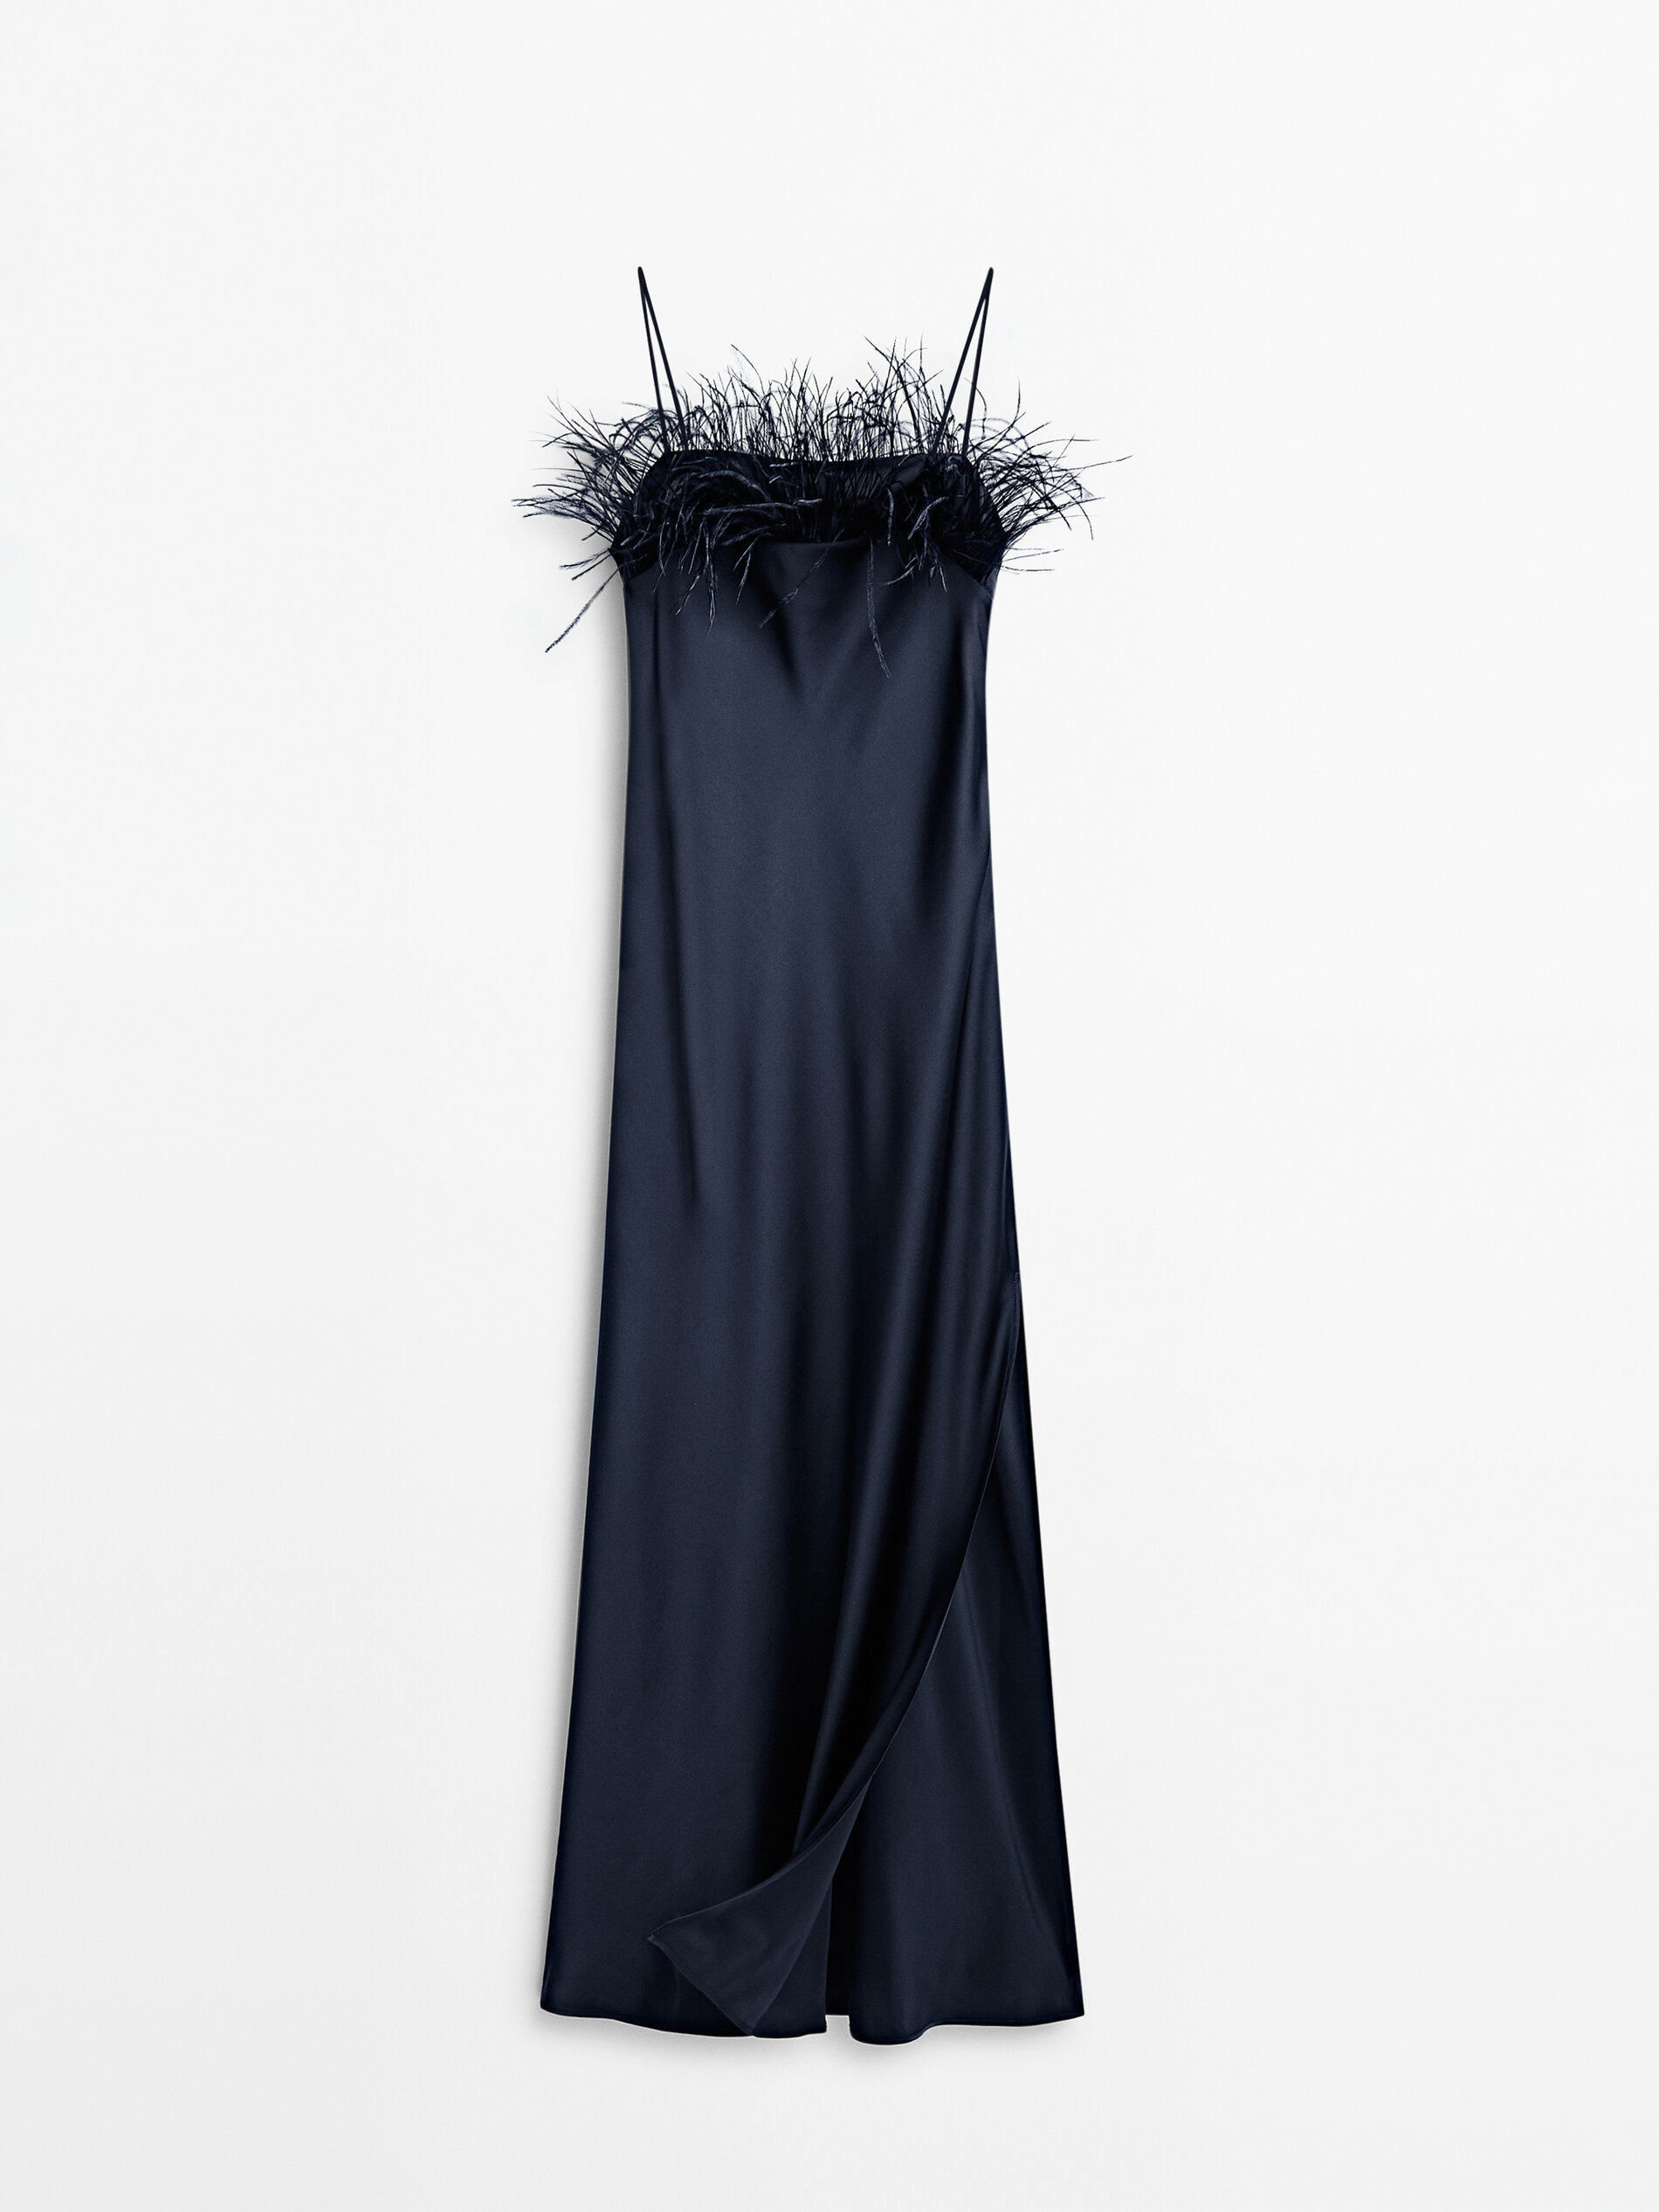 ALT: 15 vestidos de Nochevieja 2022 para terminar el año con estilo